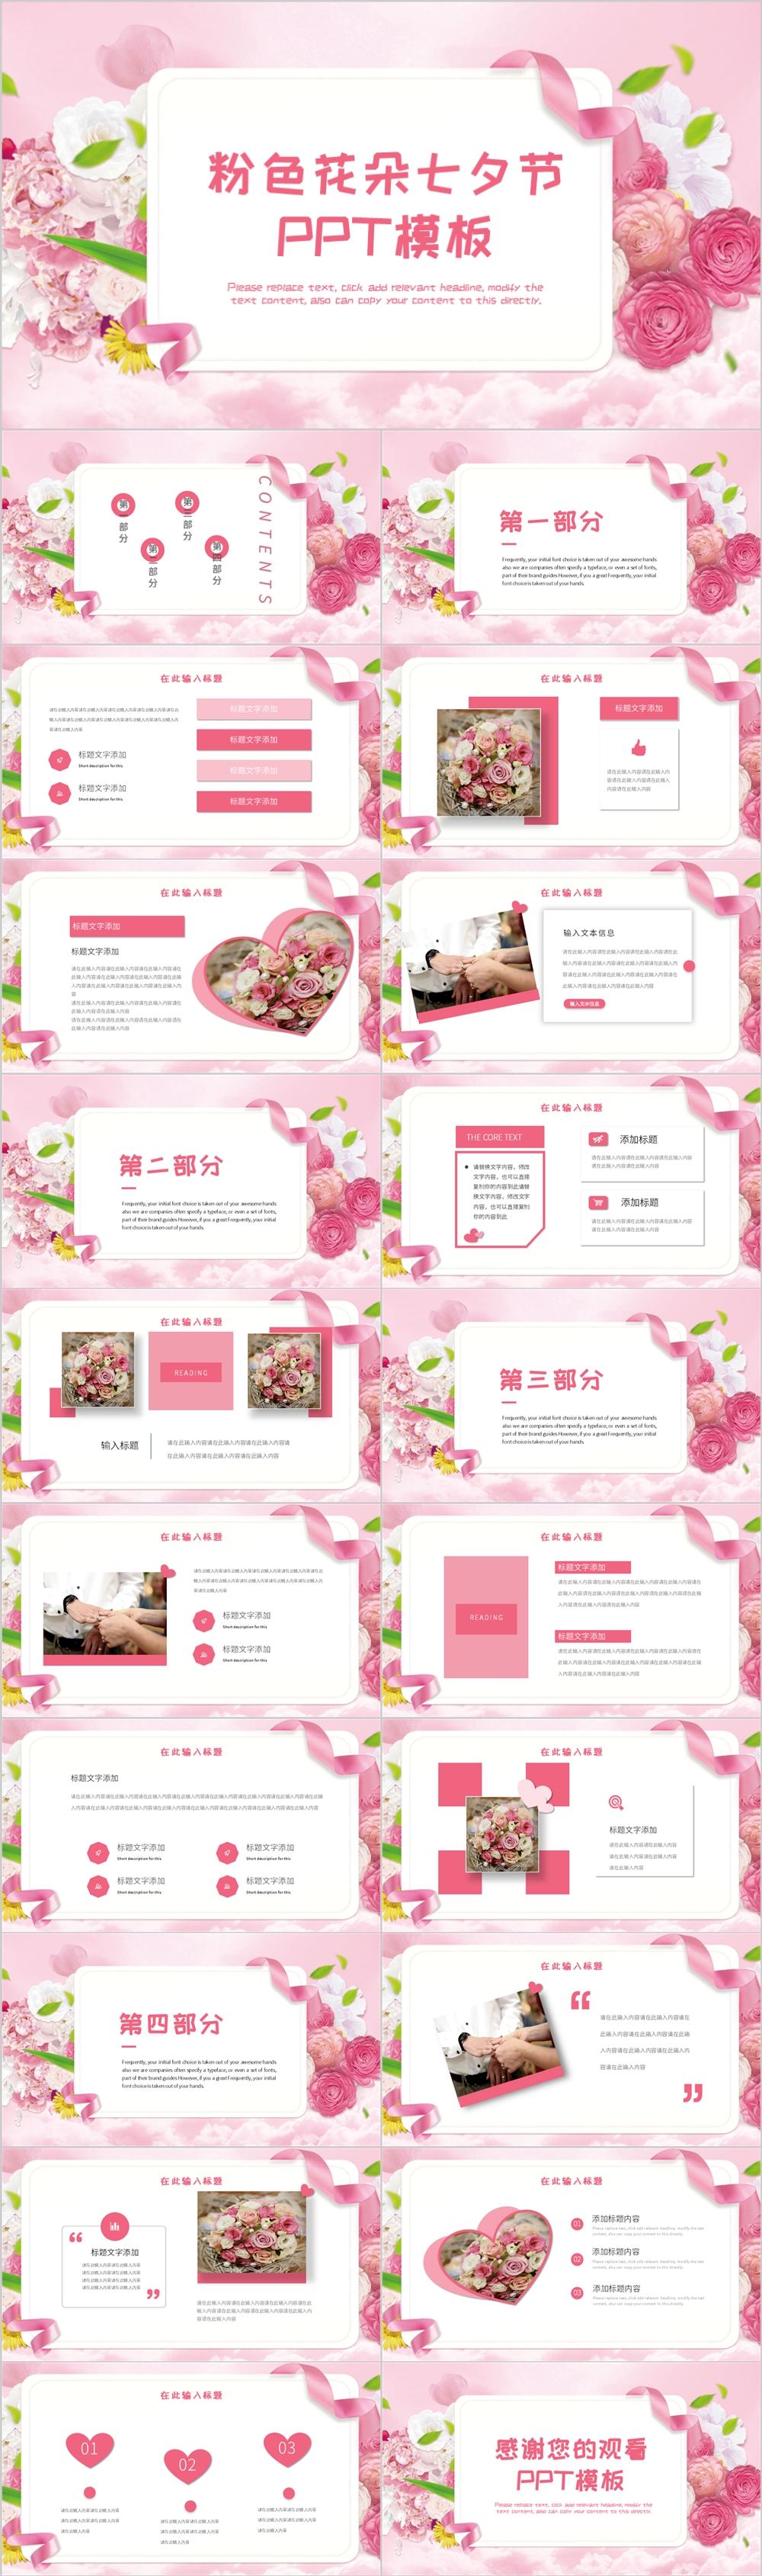 粉色系花朵七夕节通用PPT模板